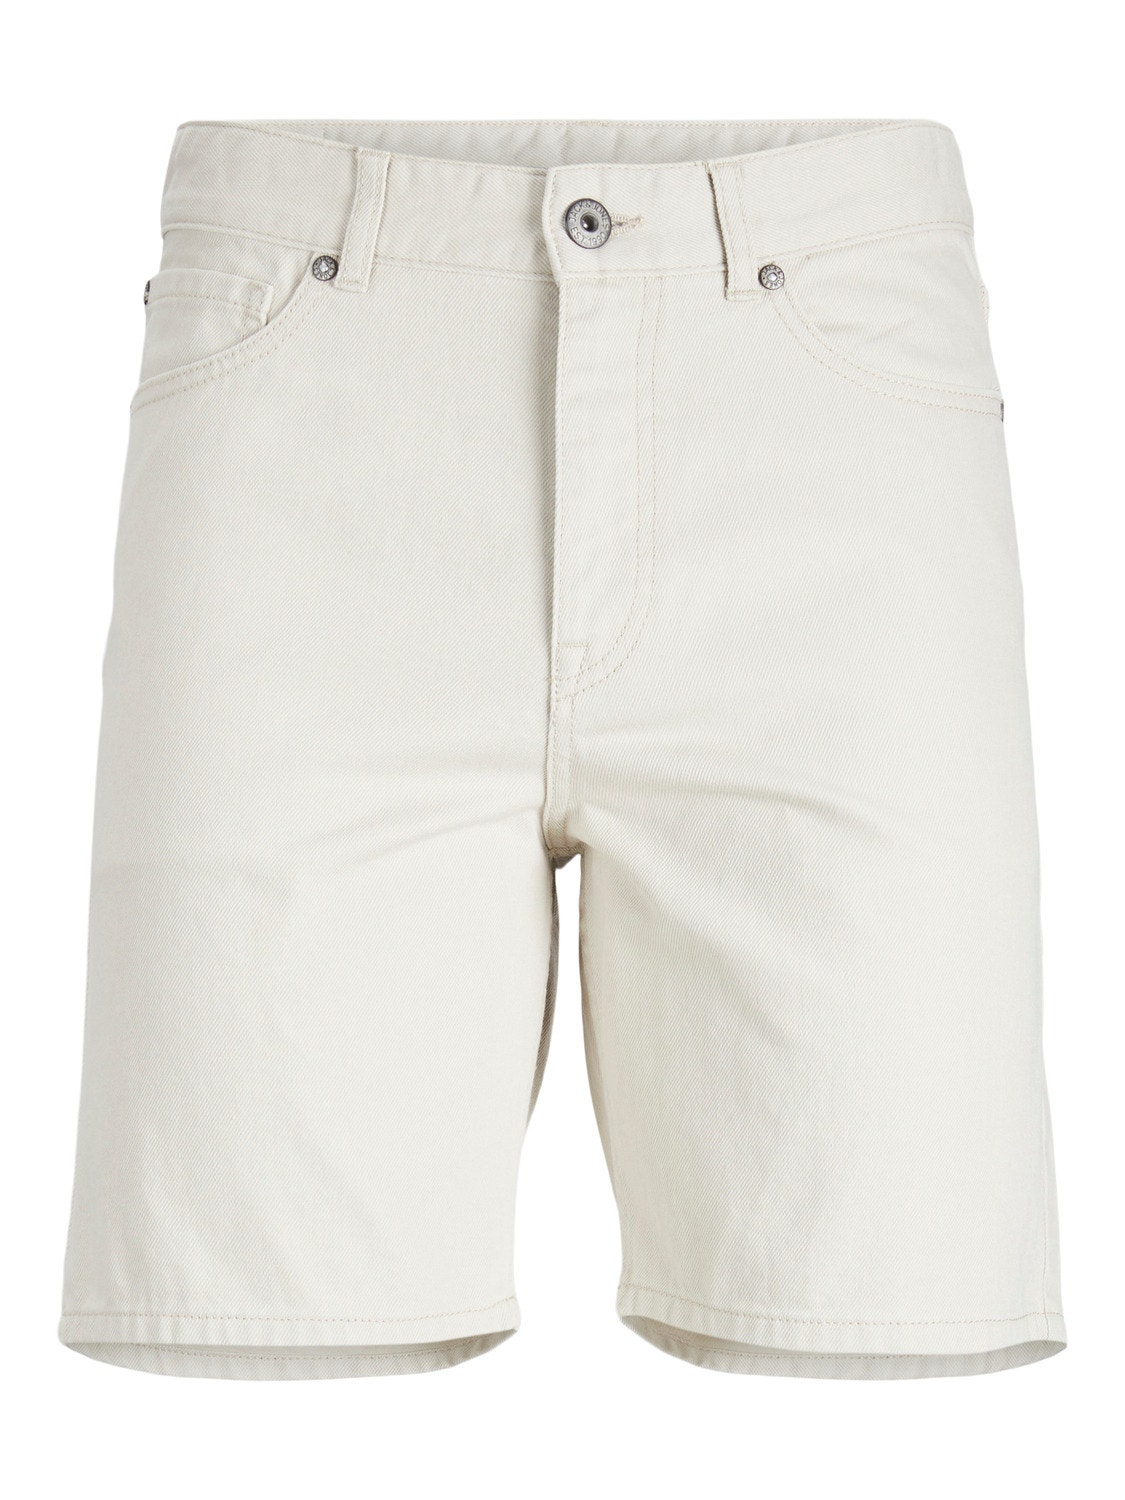 Jack & Jones Bermuda in jeans Relaxed Fit -Moonbeam - 12229805